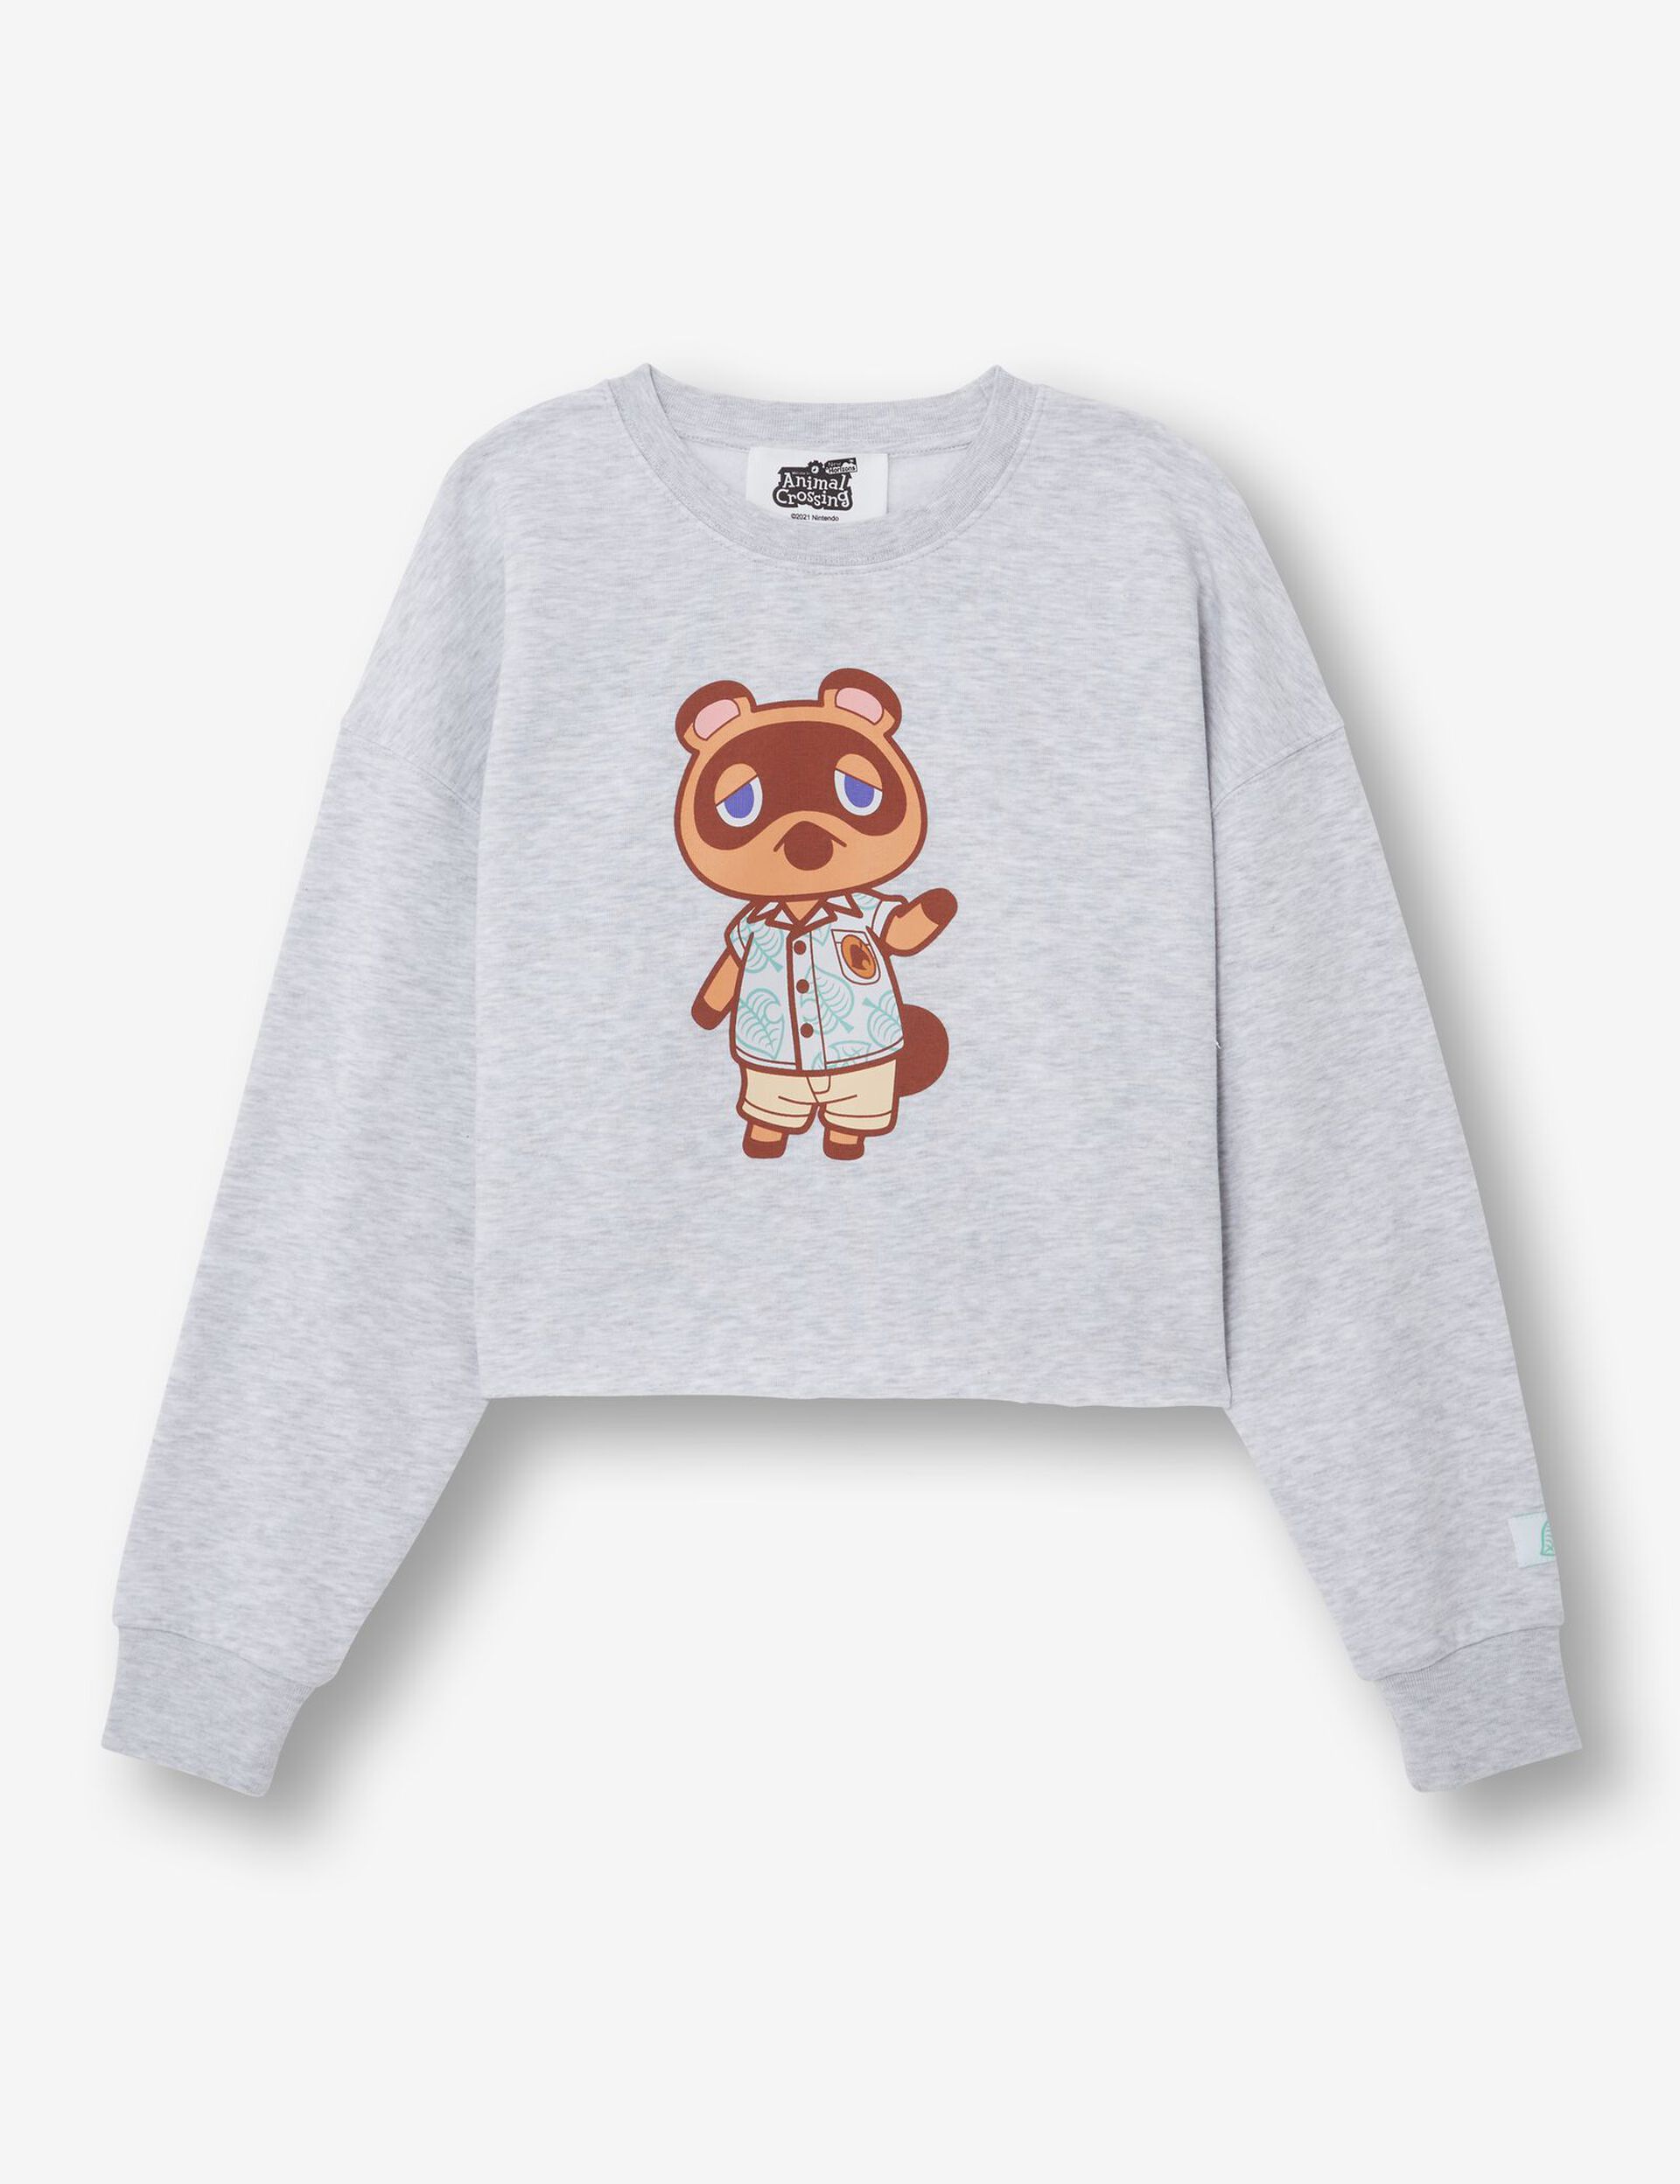 Animal Crossing sweatshirt